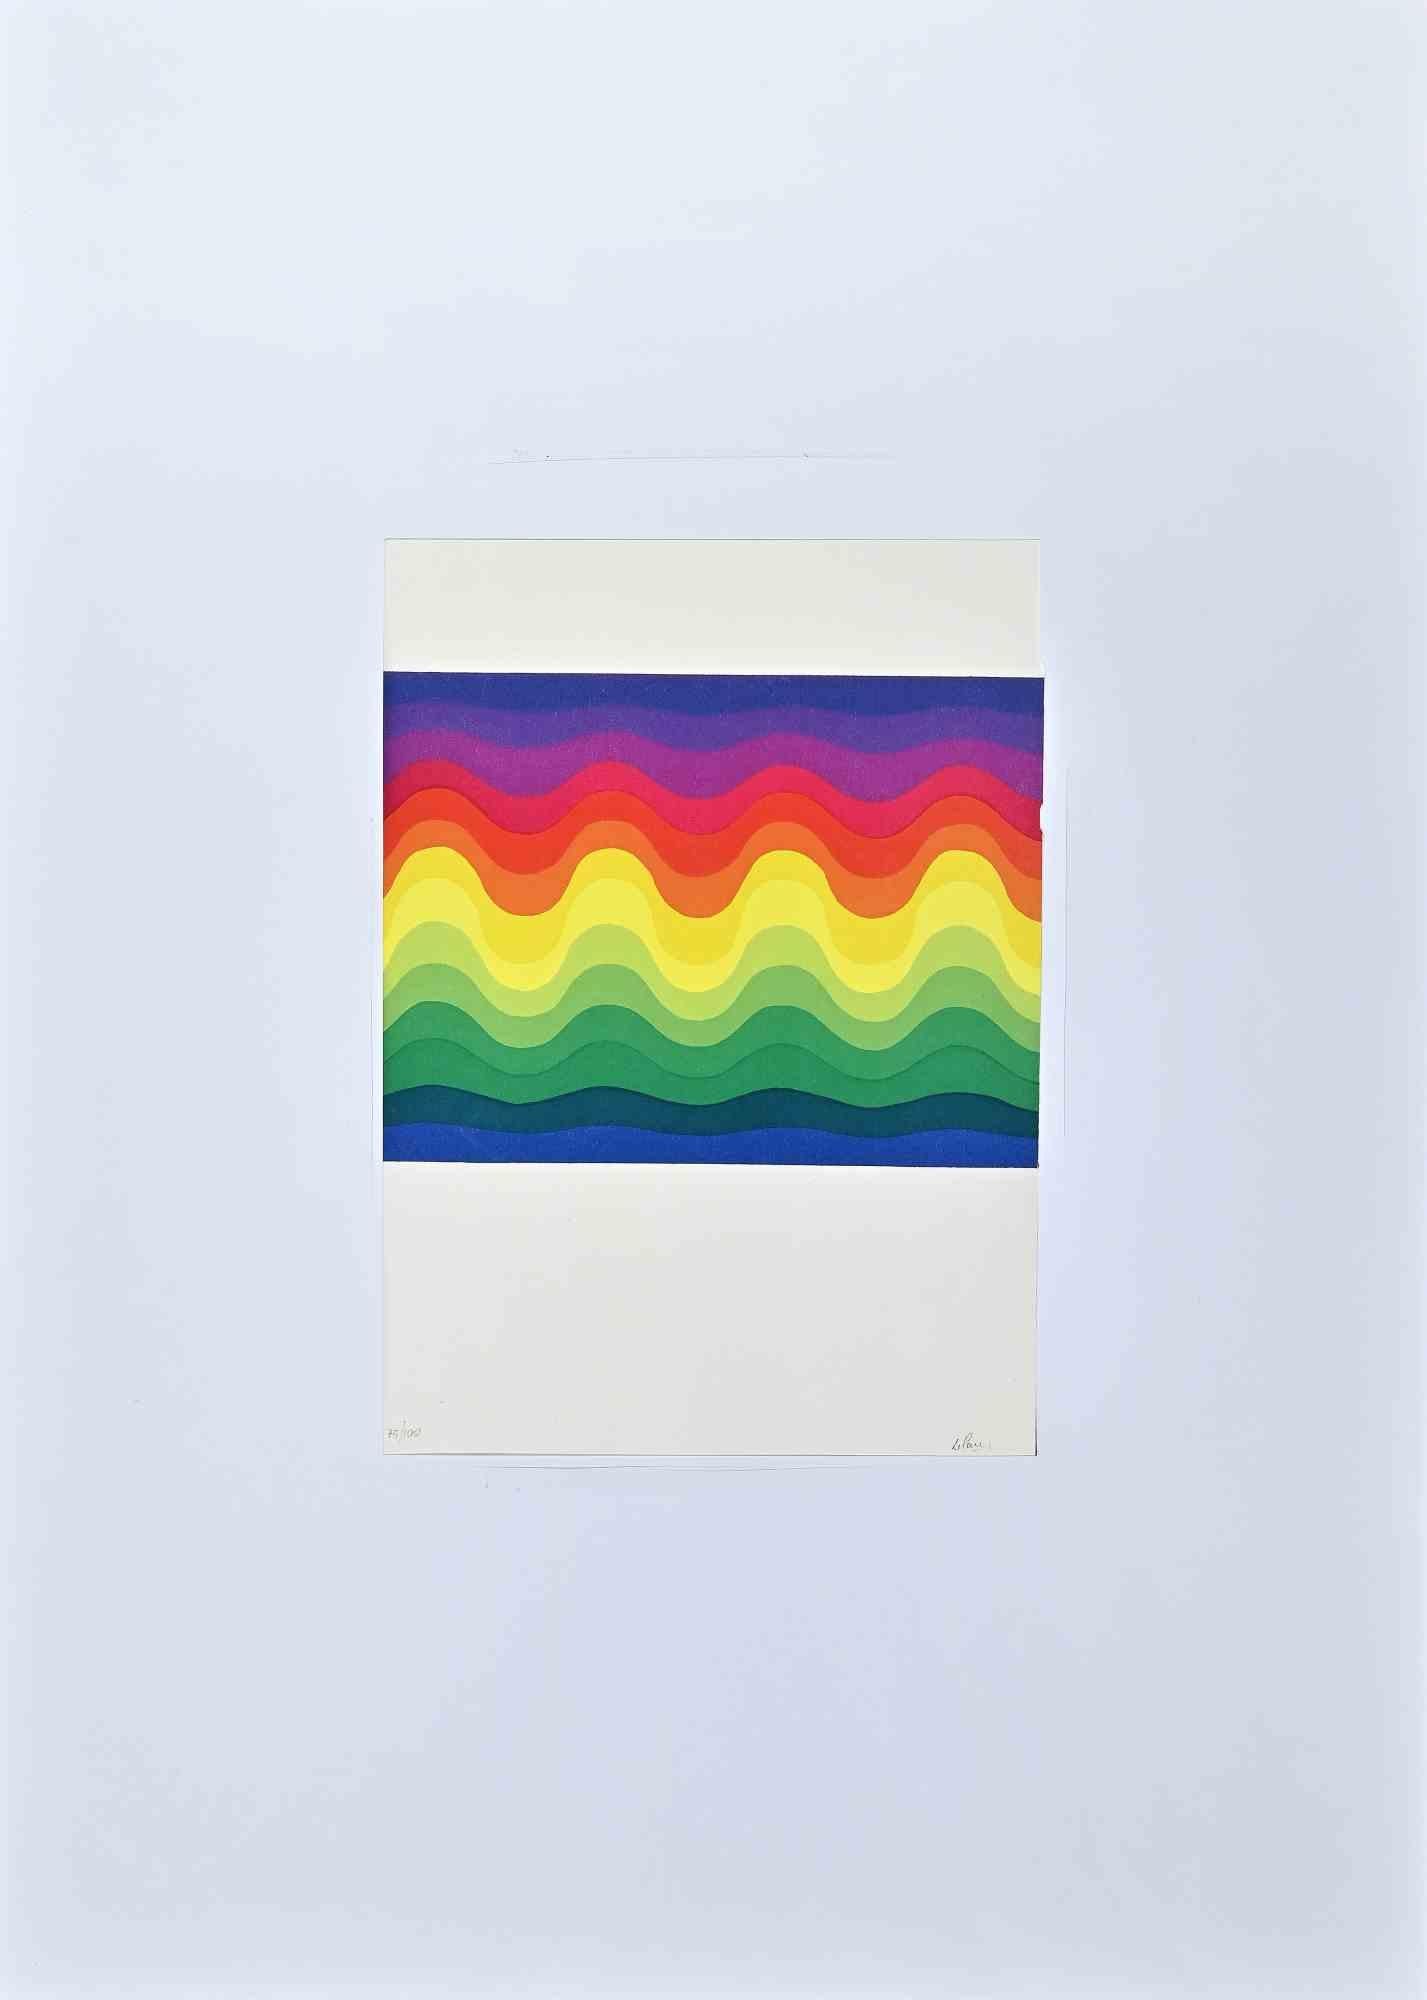 Vagues colorées est une sérigraphie colorée réalisée en 1977 par l'artiste argentin.  Julio Le Parc .

Signé à la main  au crayon par l'artiste en bas à droite. Numéroté en bas à gauche.

Edition V/XVI.

En bas à droite, le timbre sec de l'éditeur